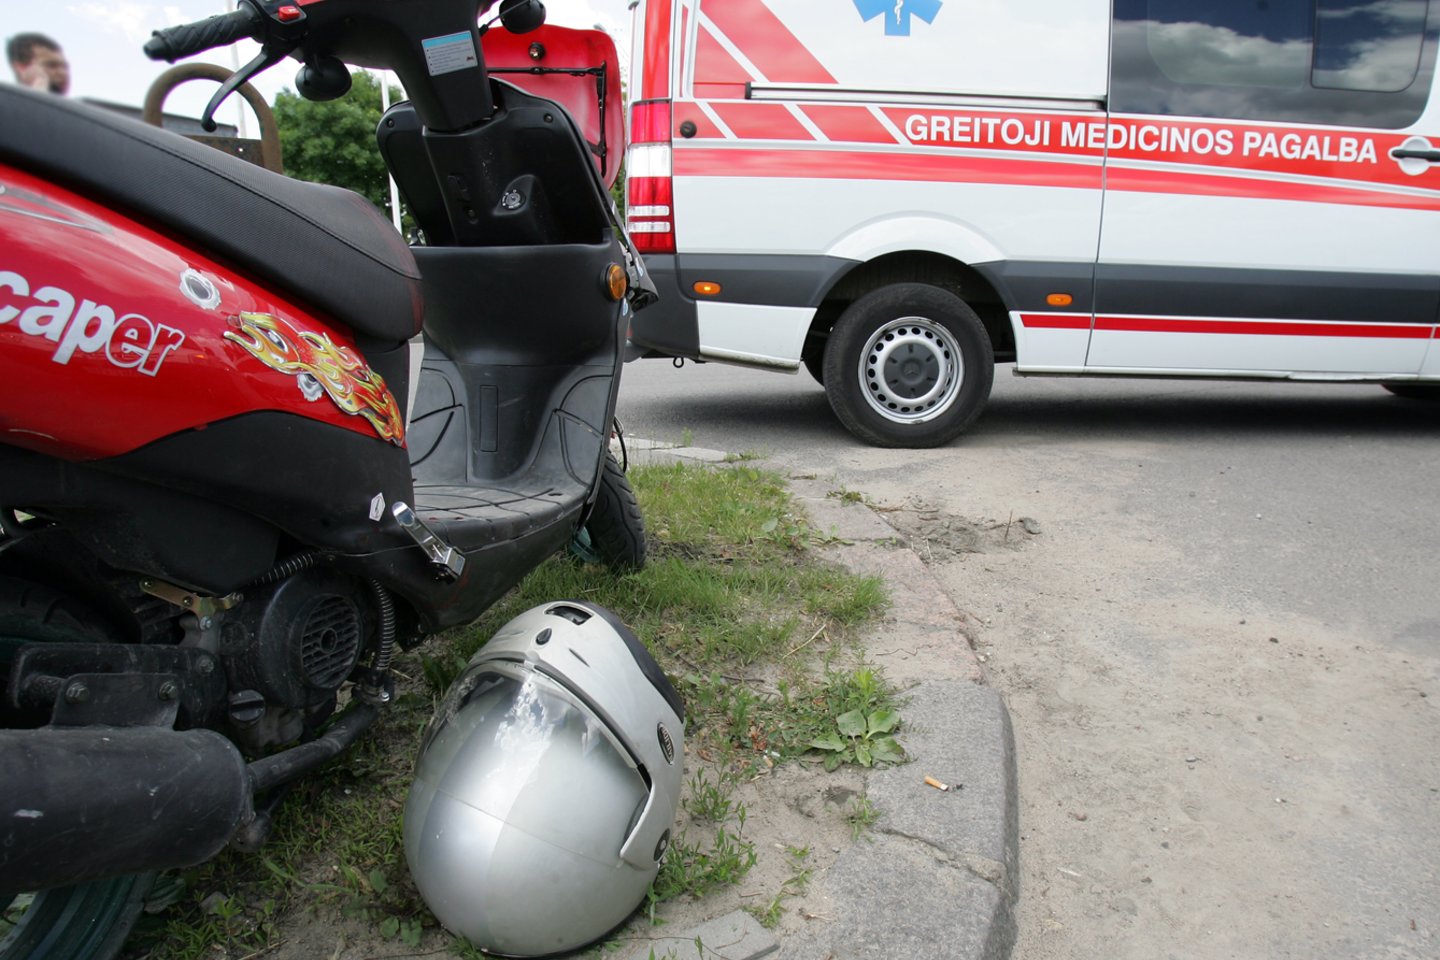 subtle swap By Panevėžio rajone neturėdamas teisės vairuoti motorolerį jaunuolis nulėkė  nuo kelio, nukentėjo ir kartu važiavęs nepilnametis